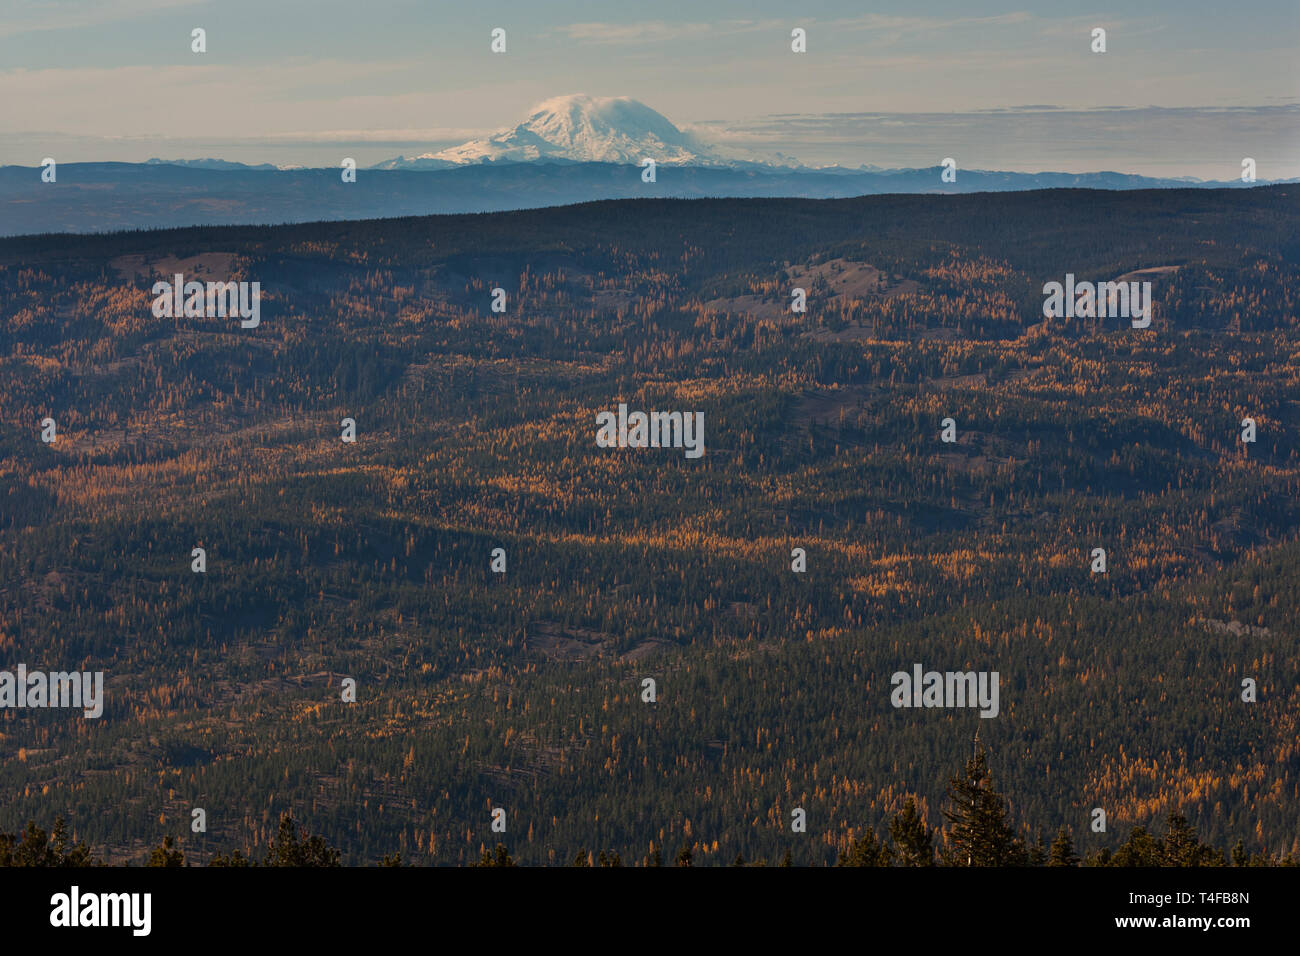 Mt Rainier visto dalla cresta di missione circa 69 miglia a nordest durante l'inverno appare molto grandi a causa della relativamente bassa terre che circondano il picco. Foto Stock